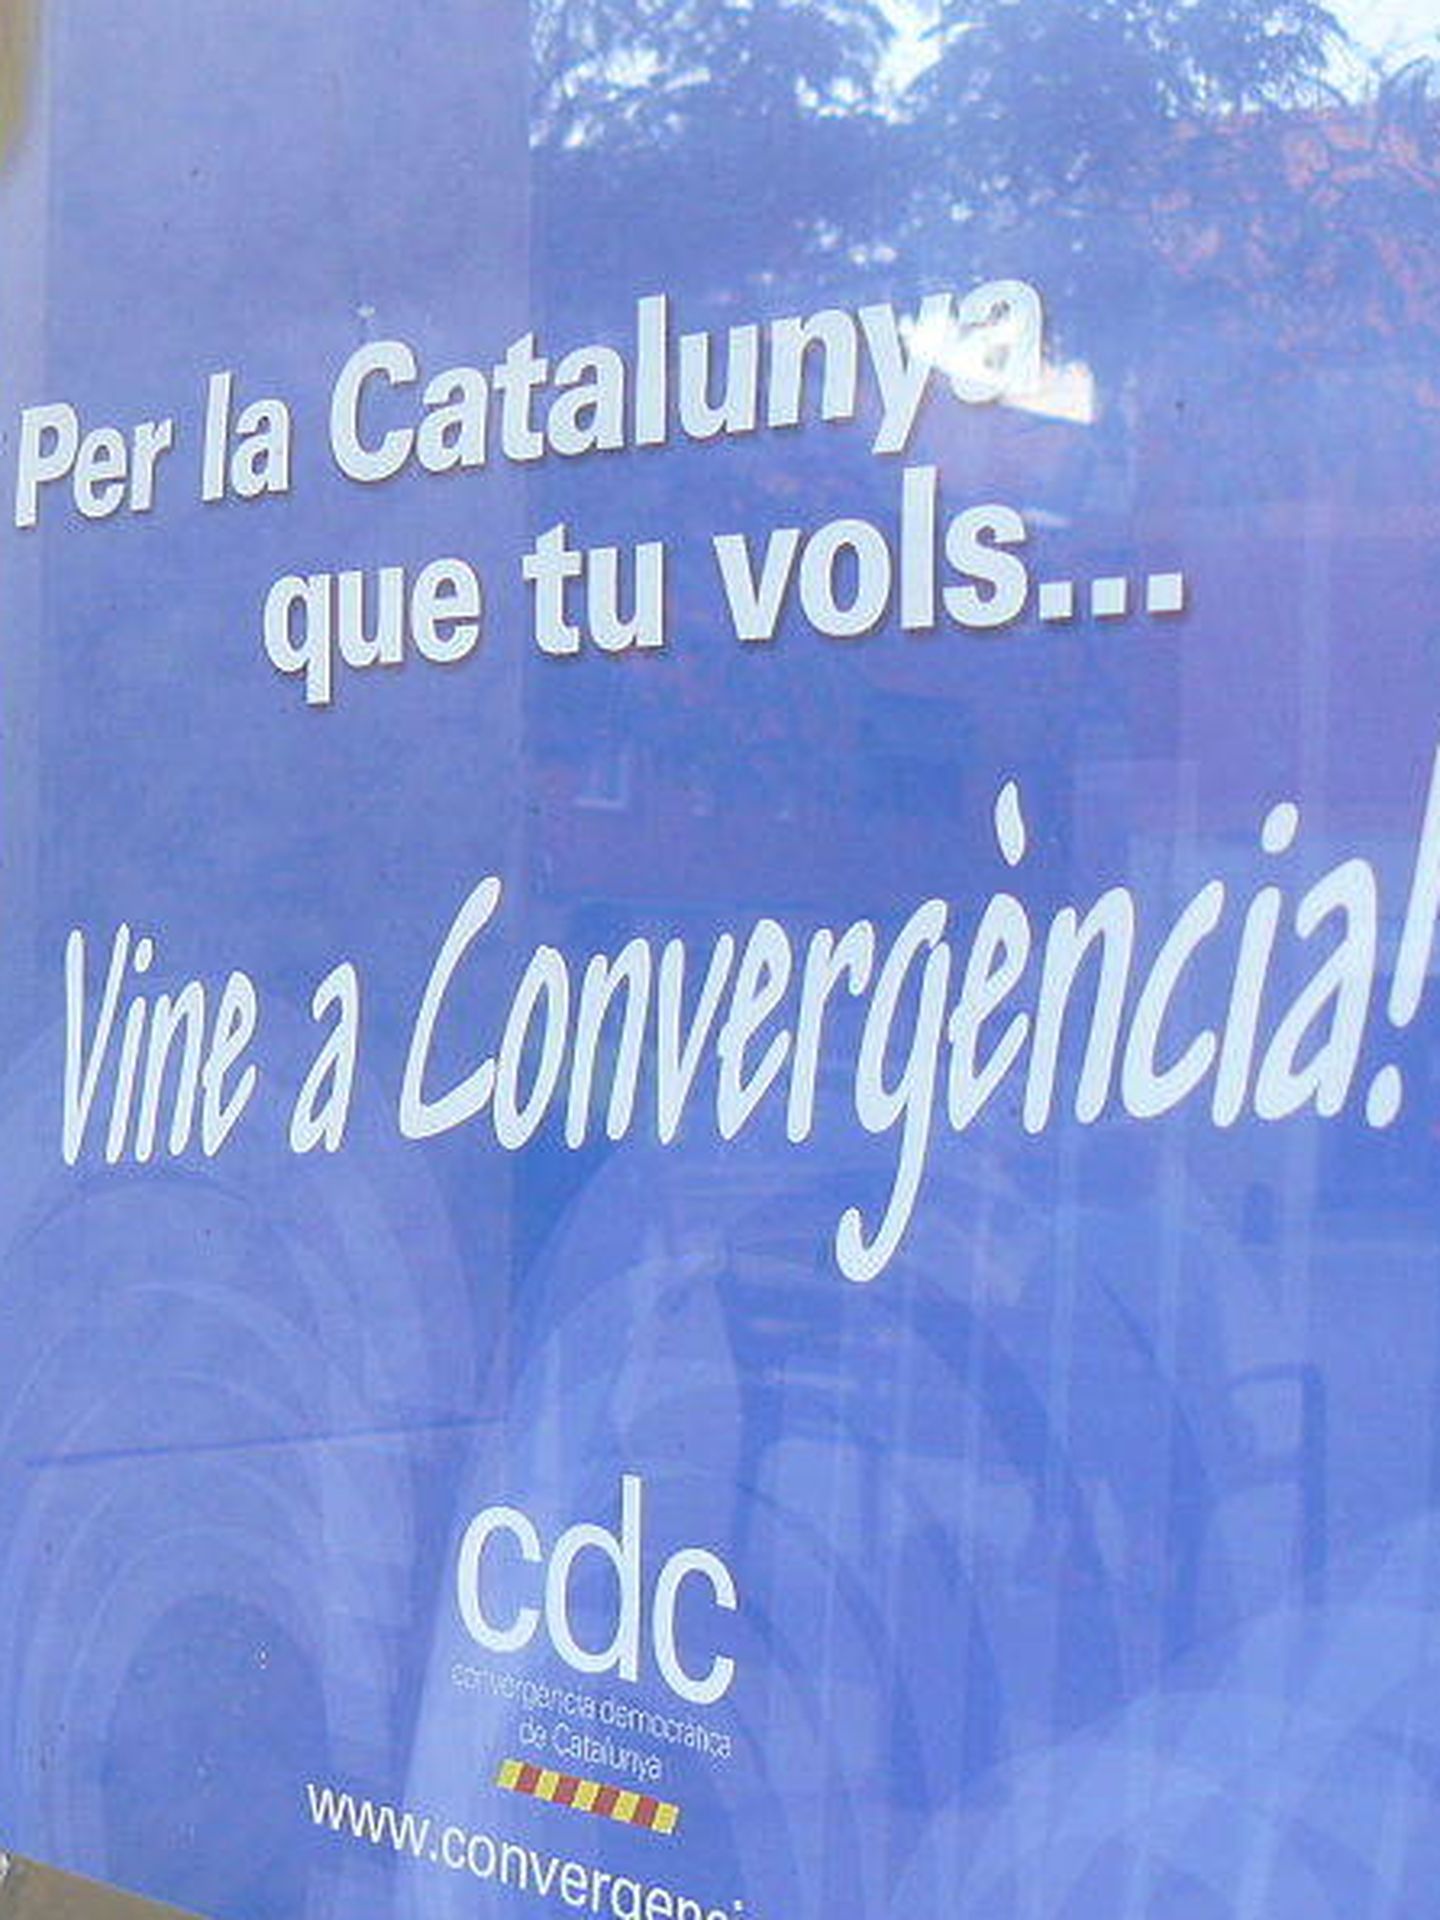 Convergéncia (CDC)